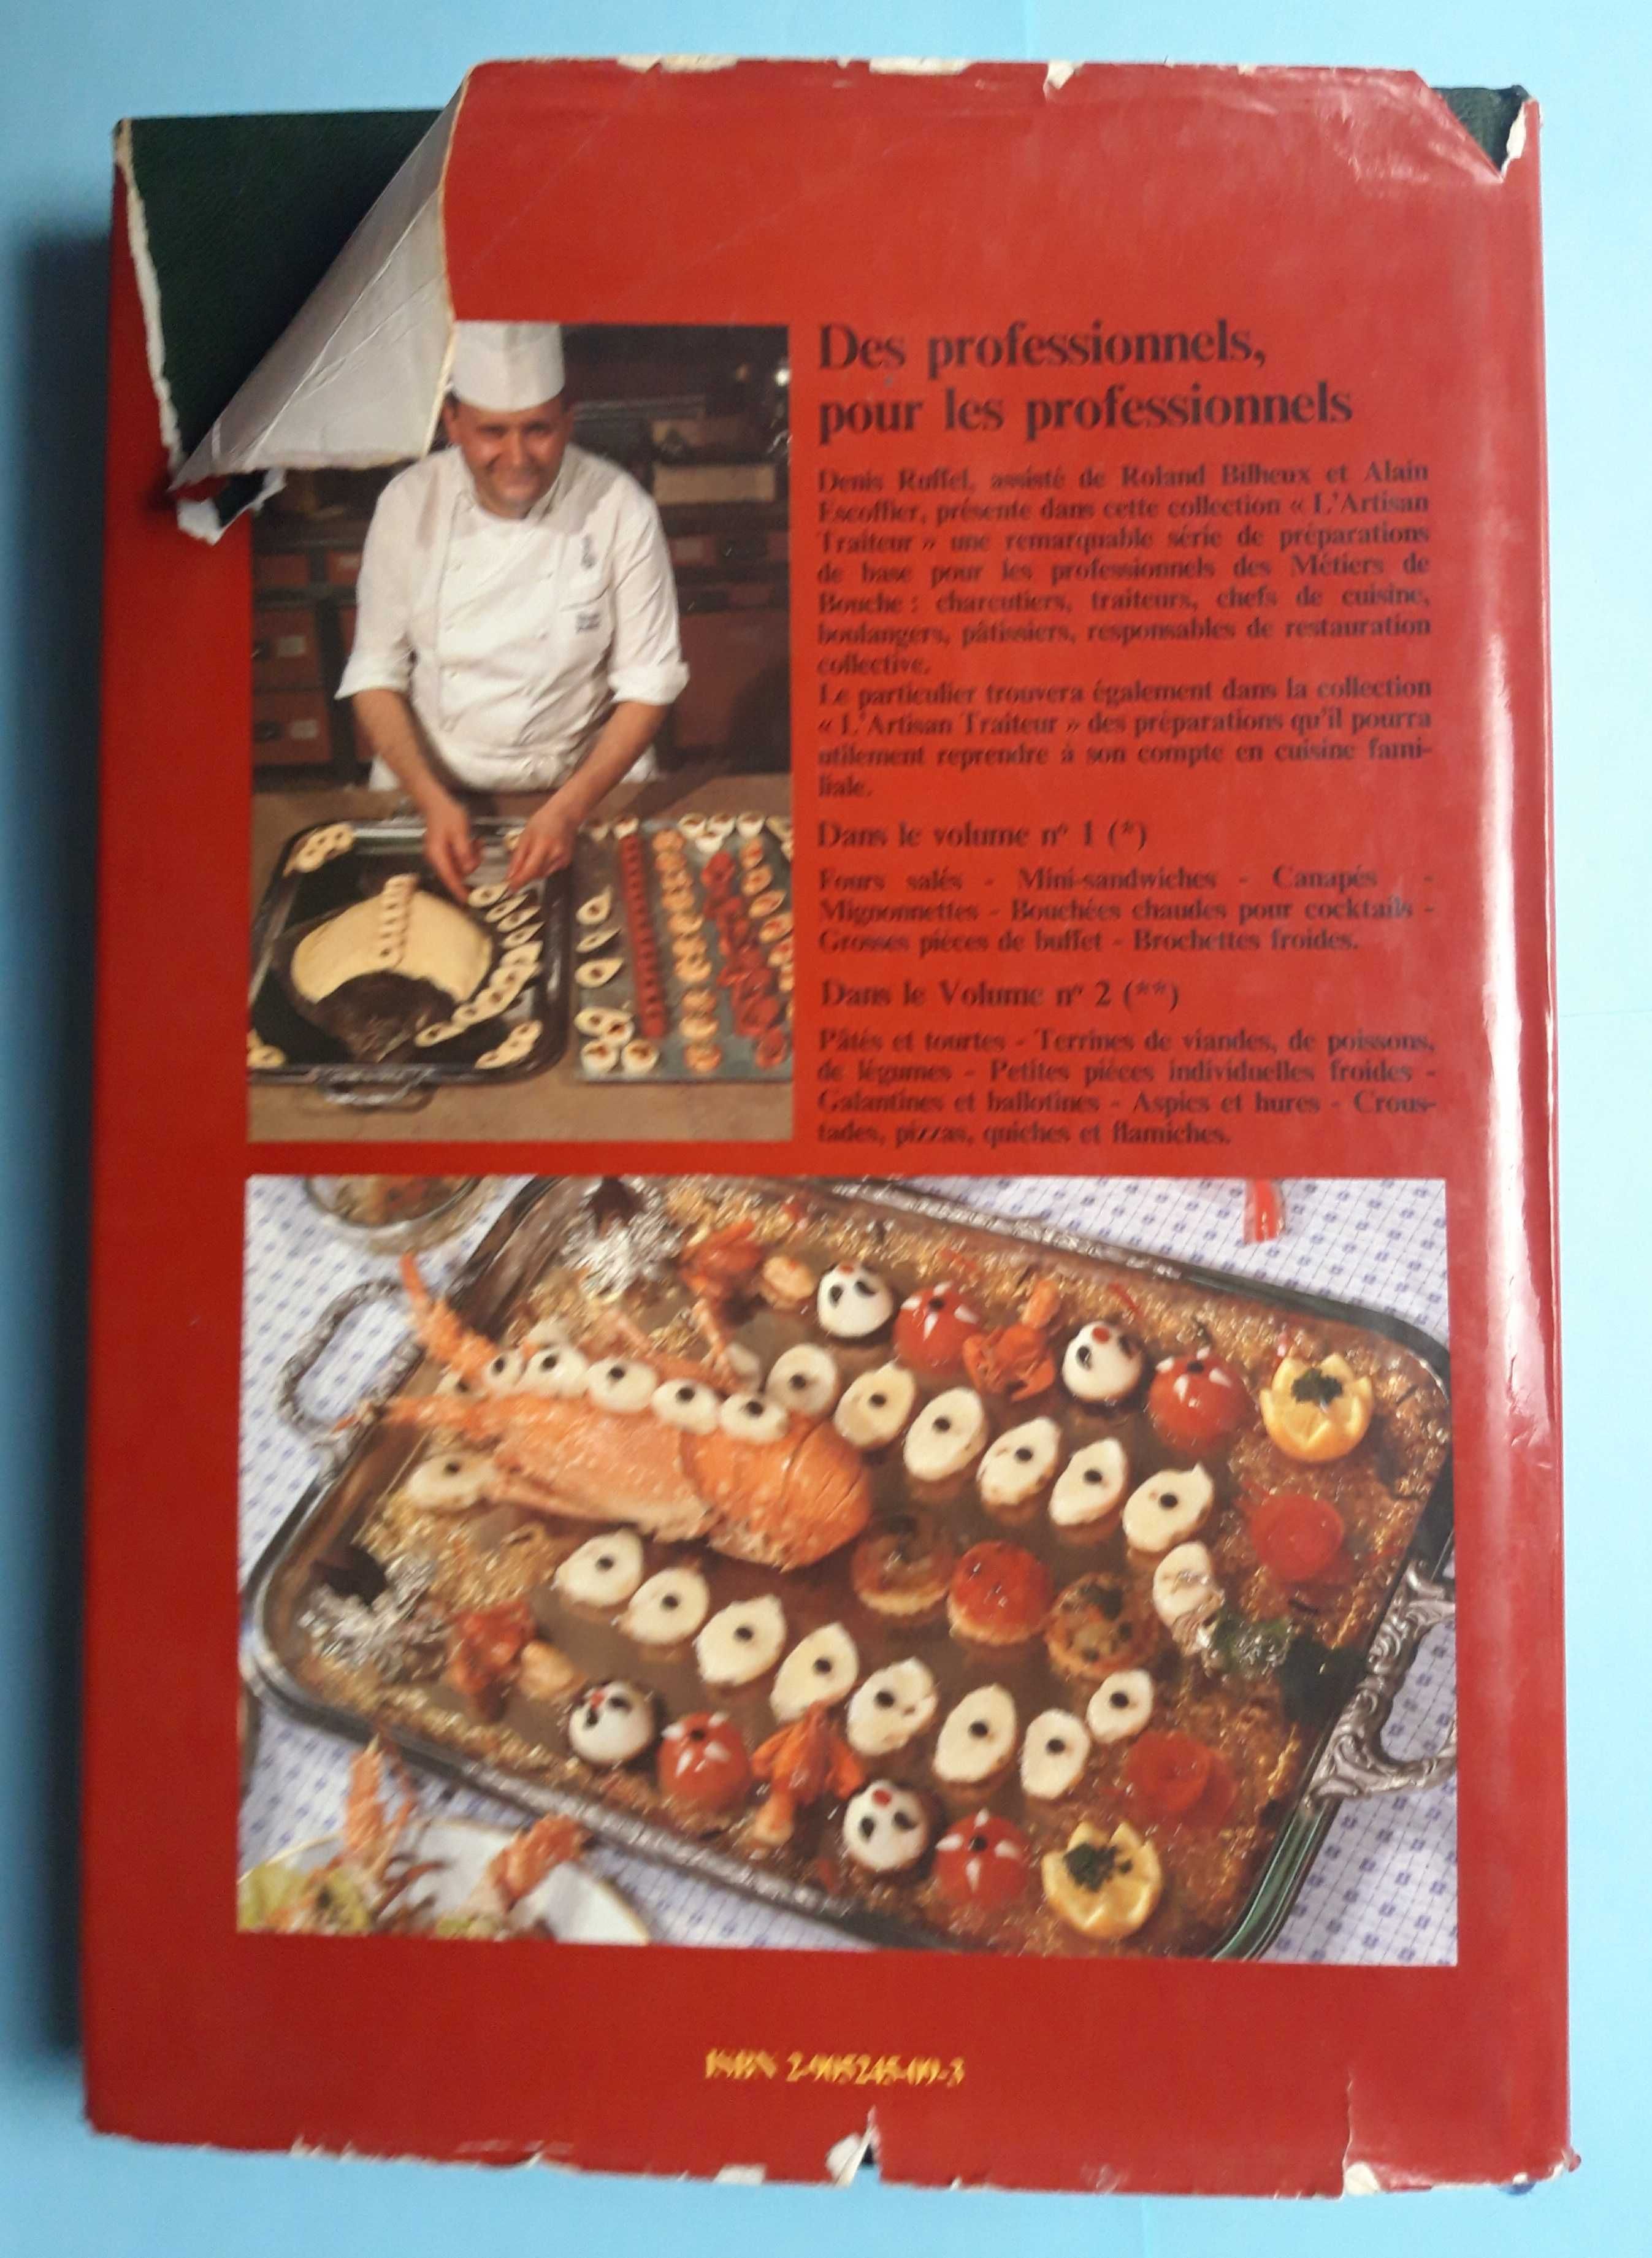 Livro - Denis Ruffel - Cuisine Froide: L'Artisan Traiteur VSO